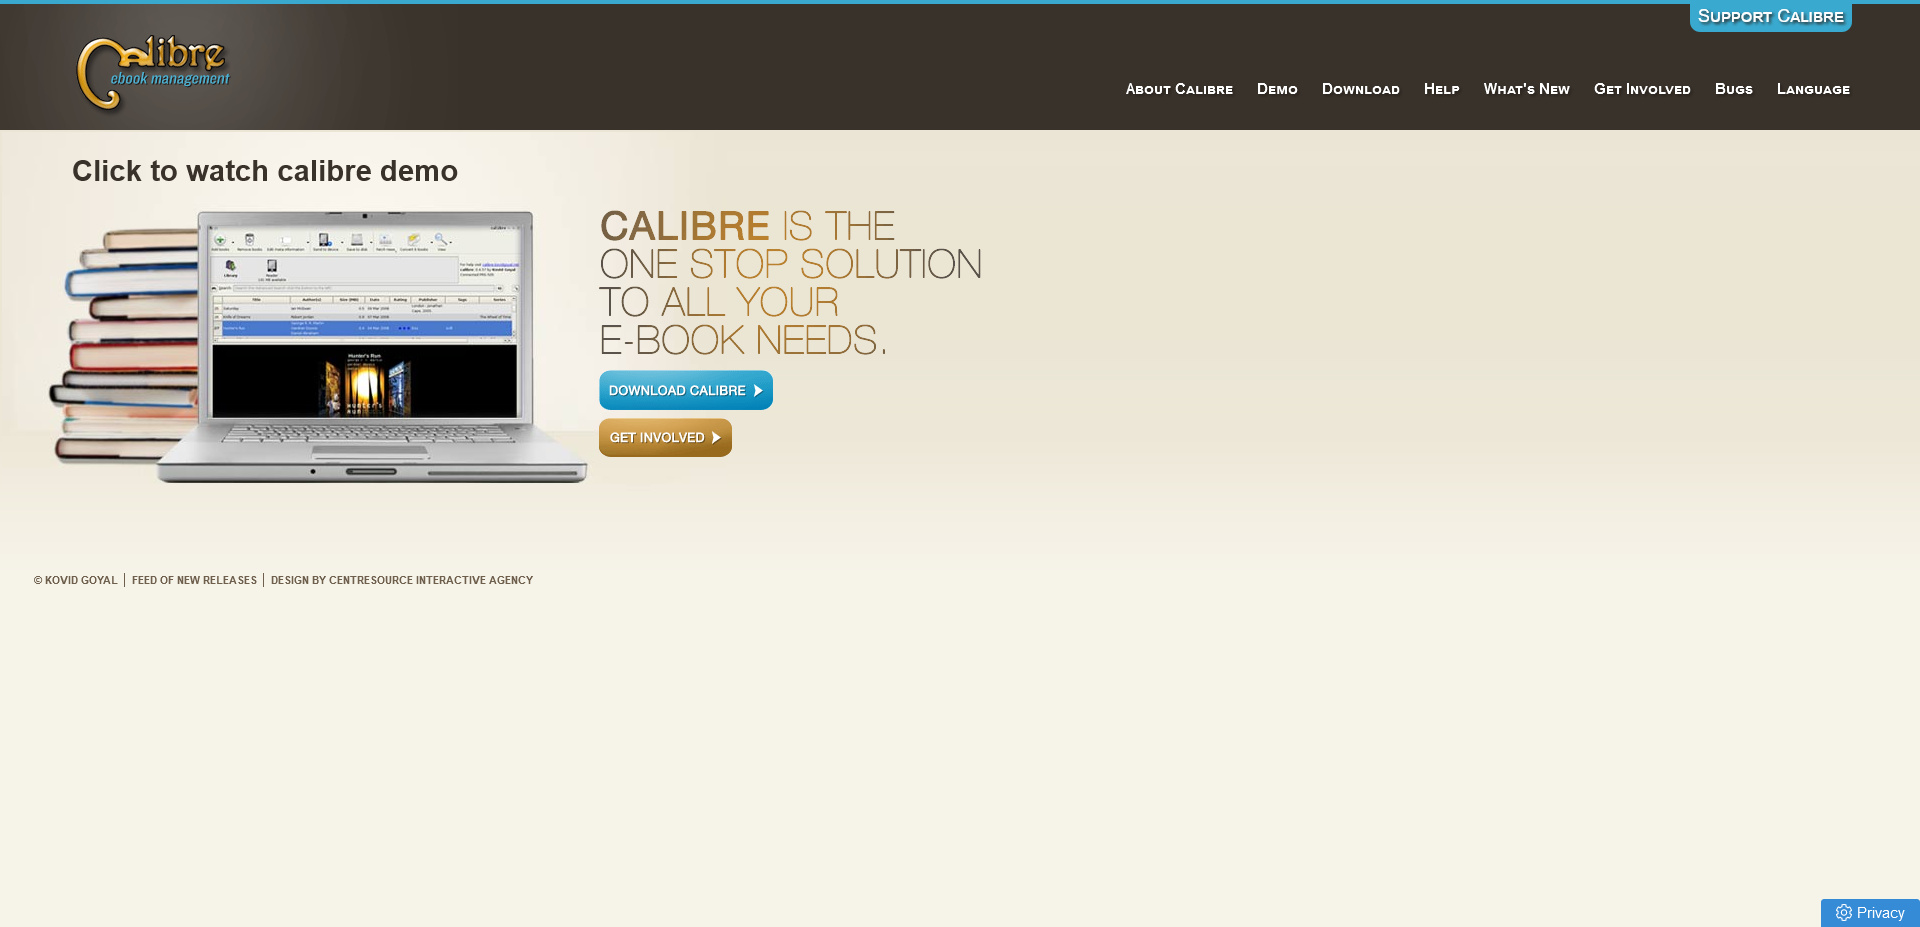 Calibre's main website.